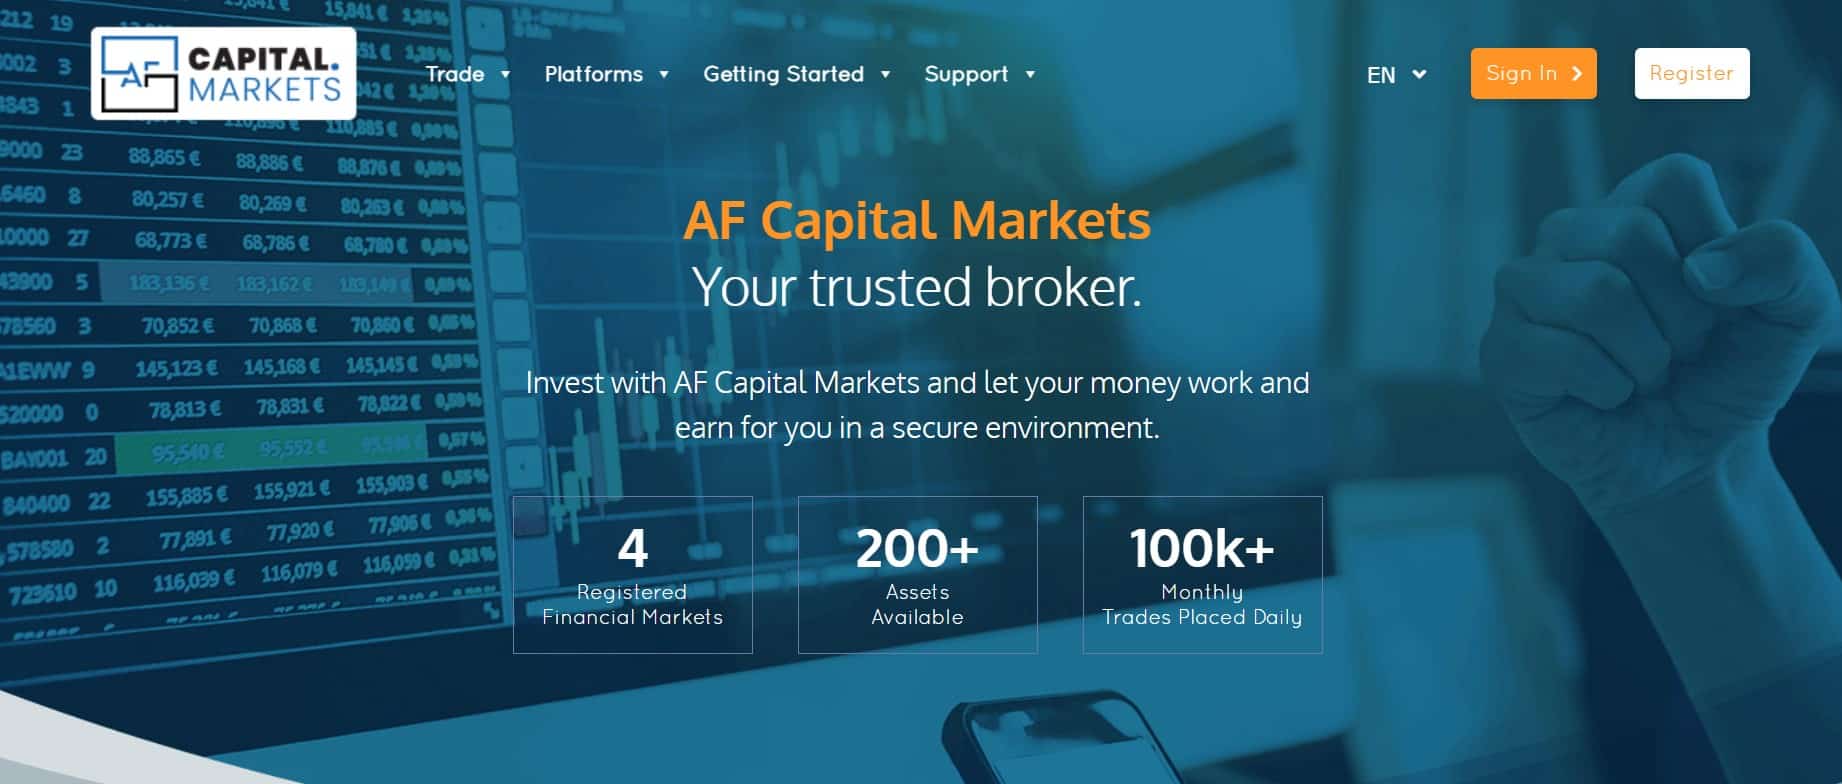 AF Capital Markets website